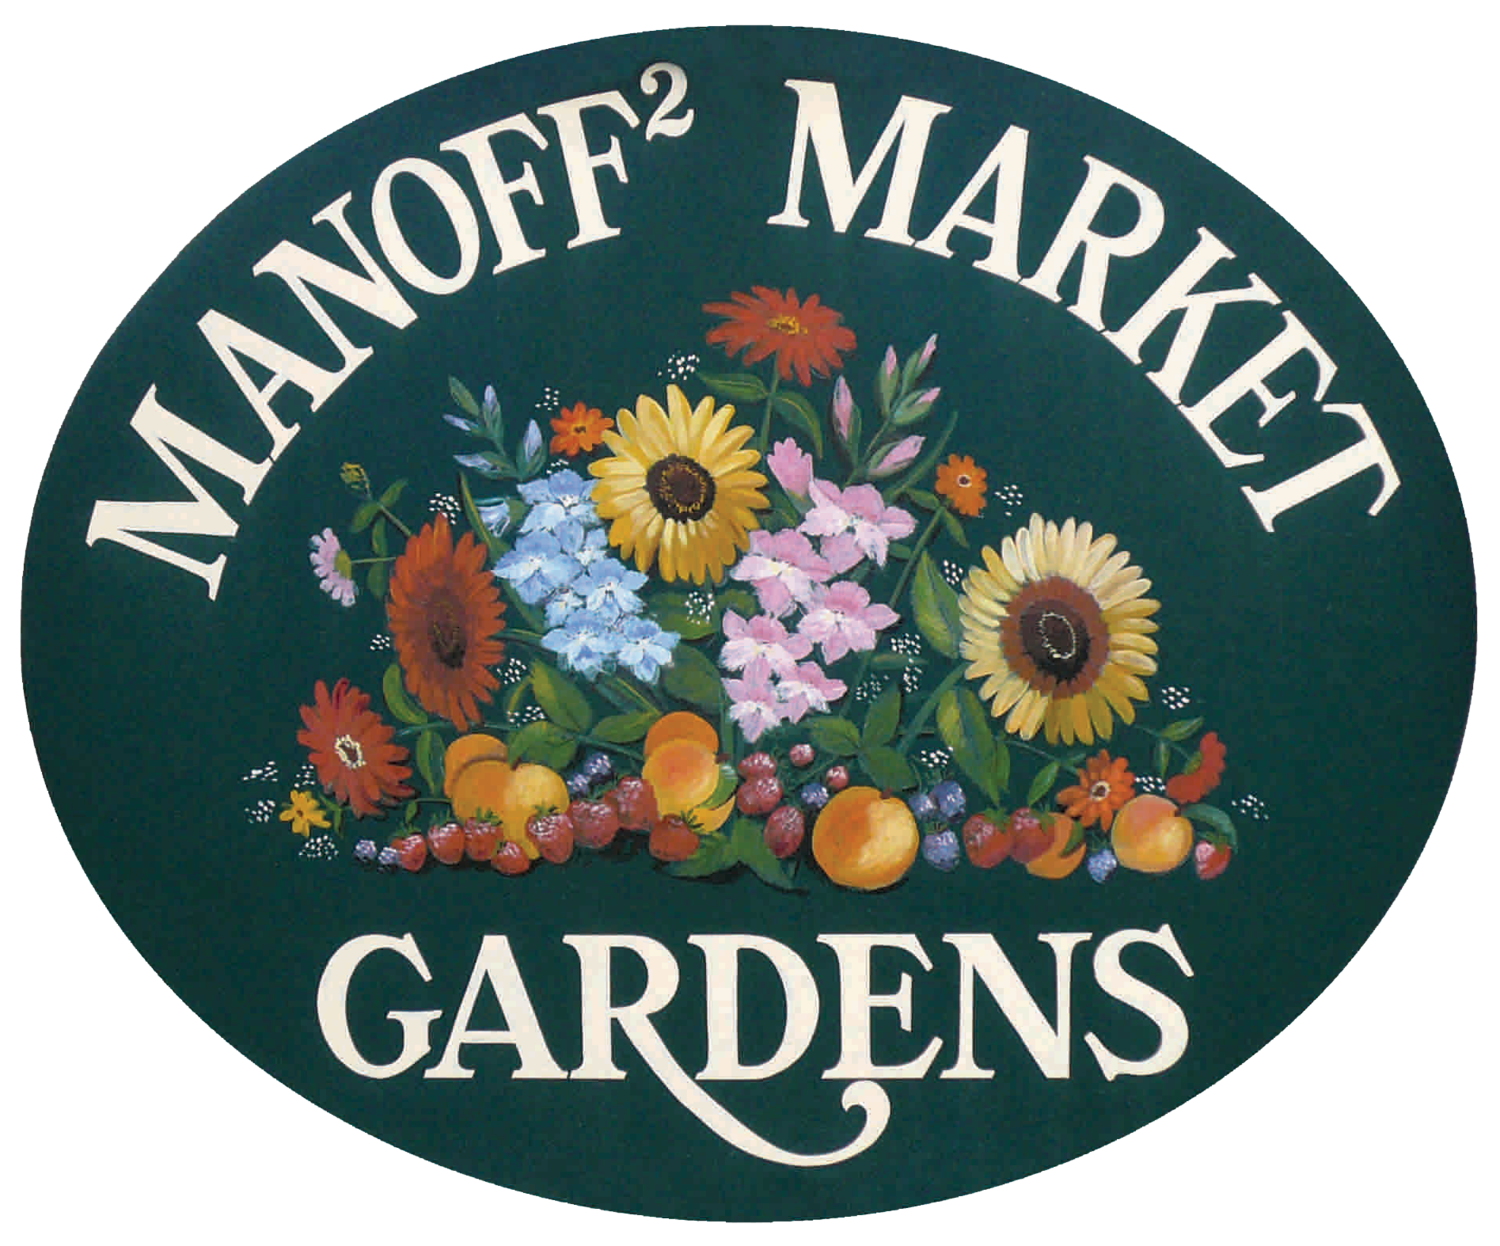 Manoff Market Gardens logo